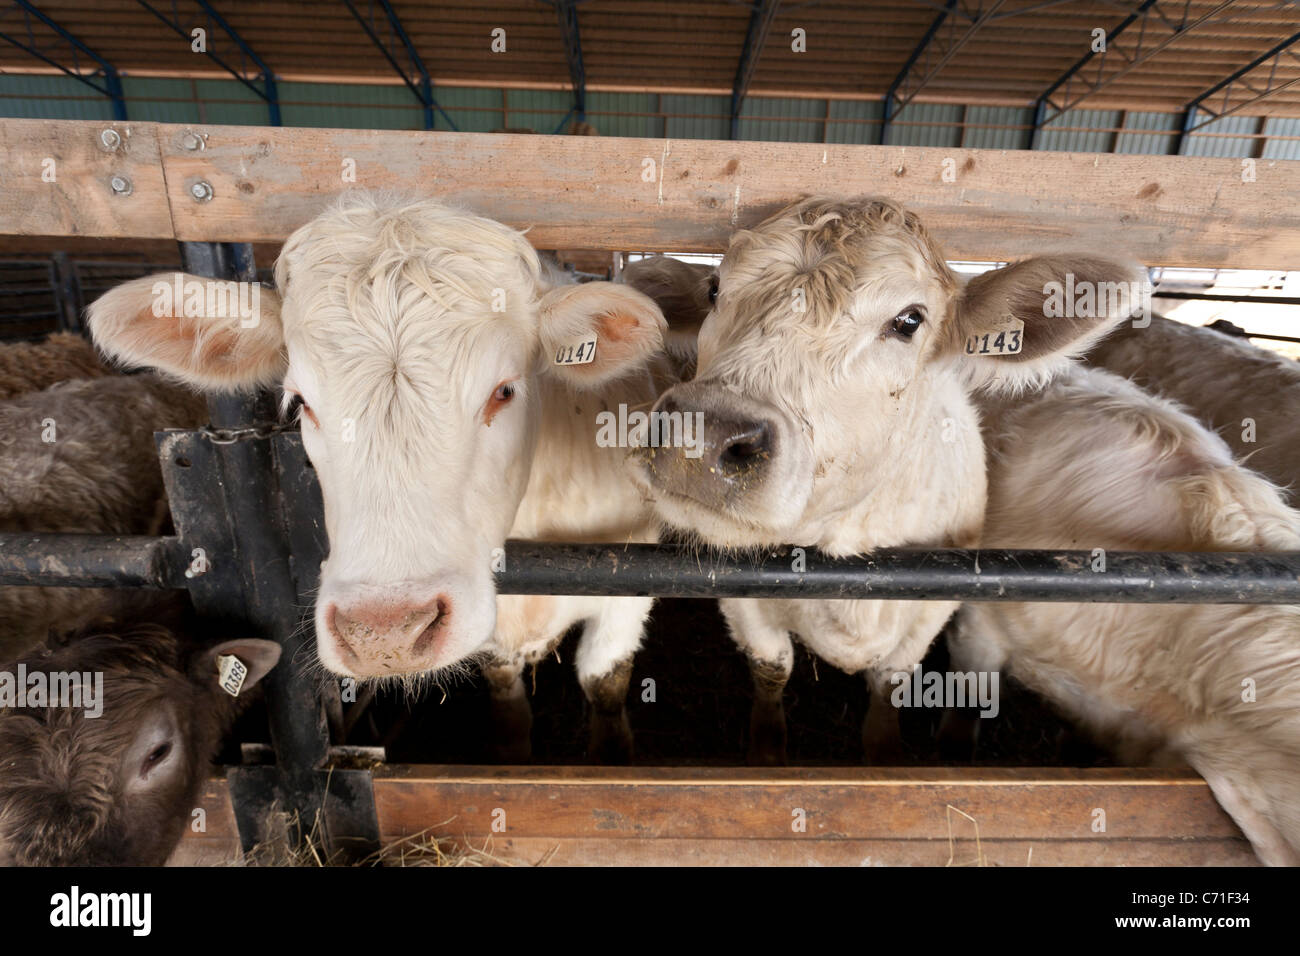 Deux têtes de bétail à la mangeoire. Deux chargeuses pause dans leur alimentation à un étranger de l'œil. Banque D'Images